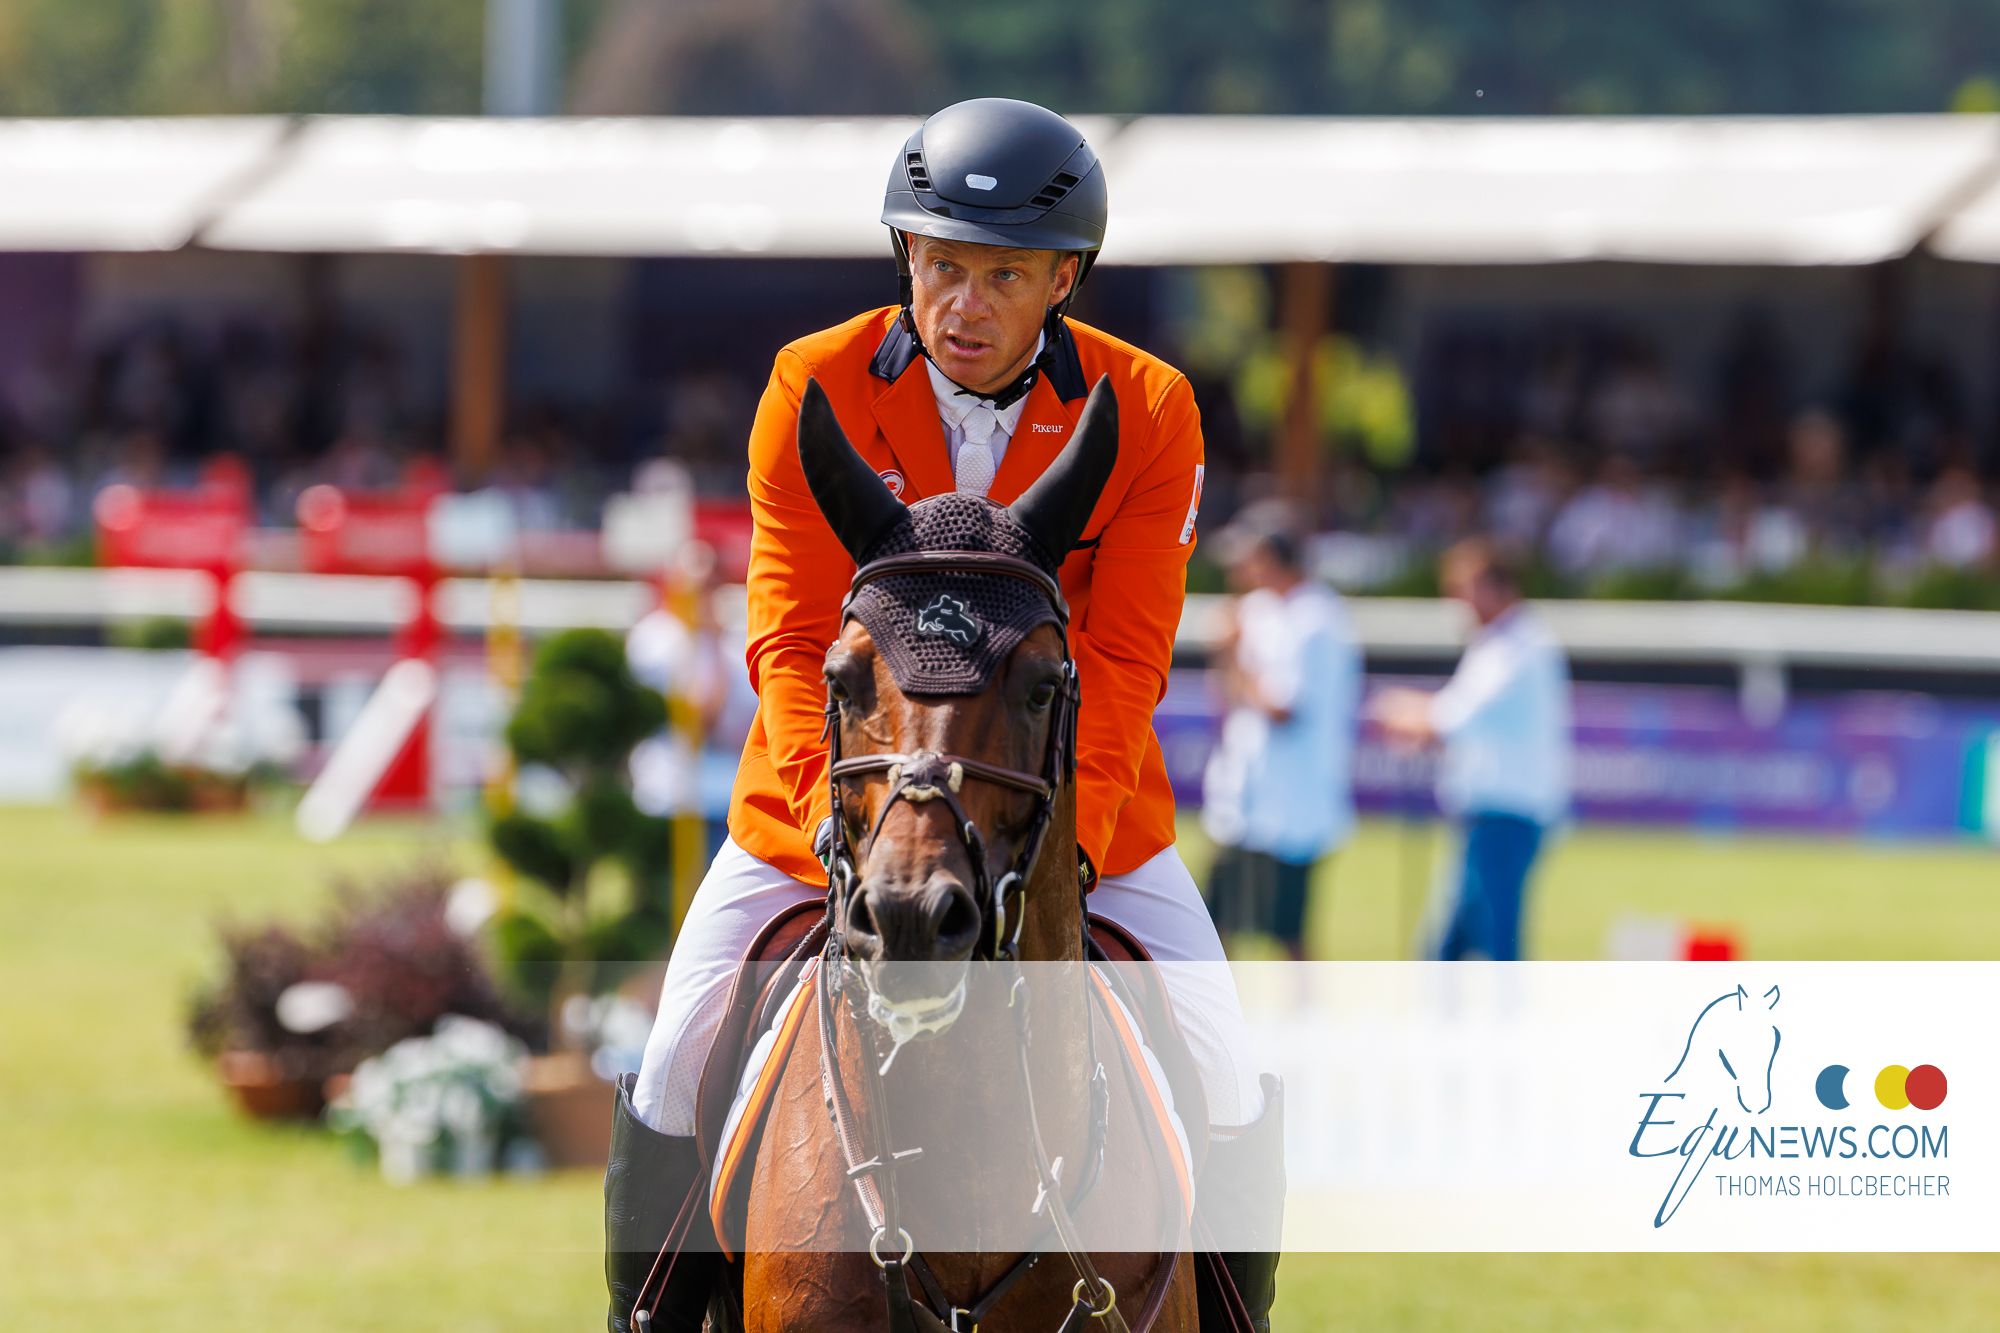 Willem Greve: "Instelling is wat een goed sportpaard definieert!"